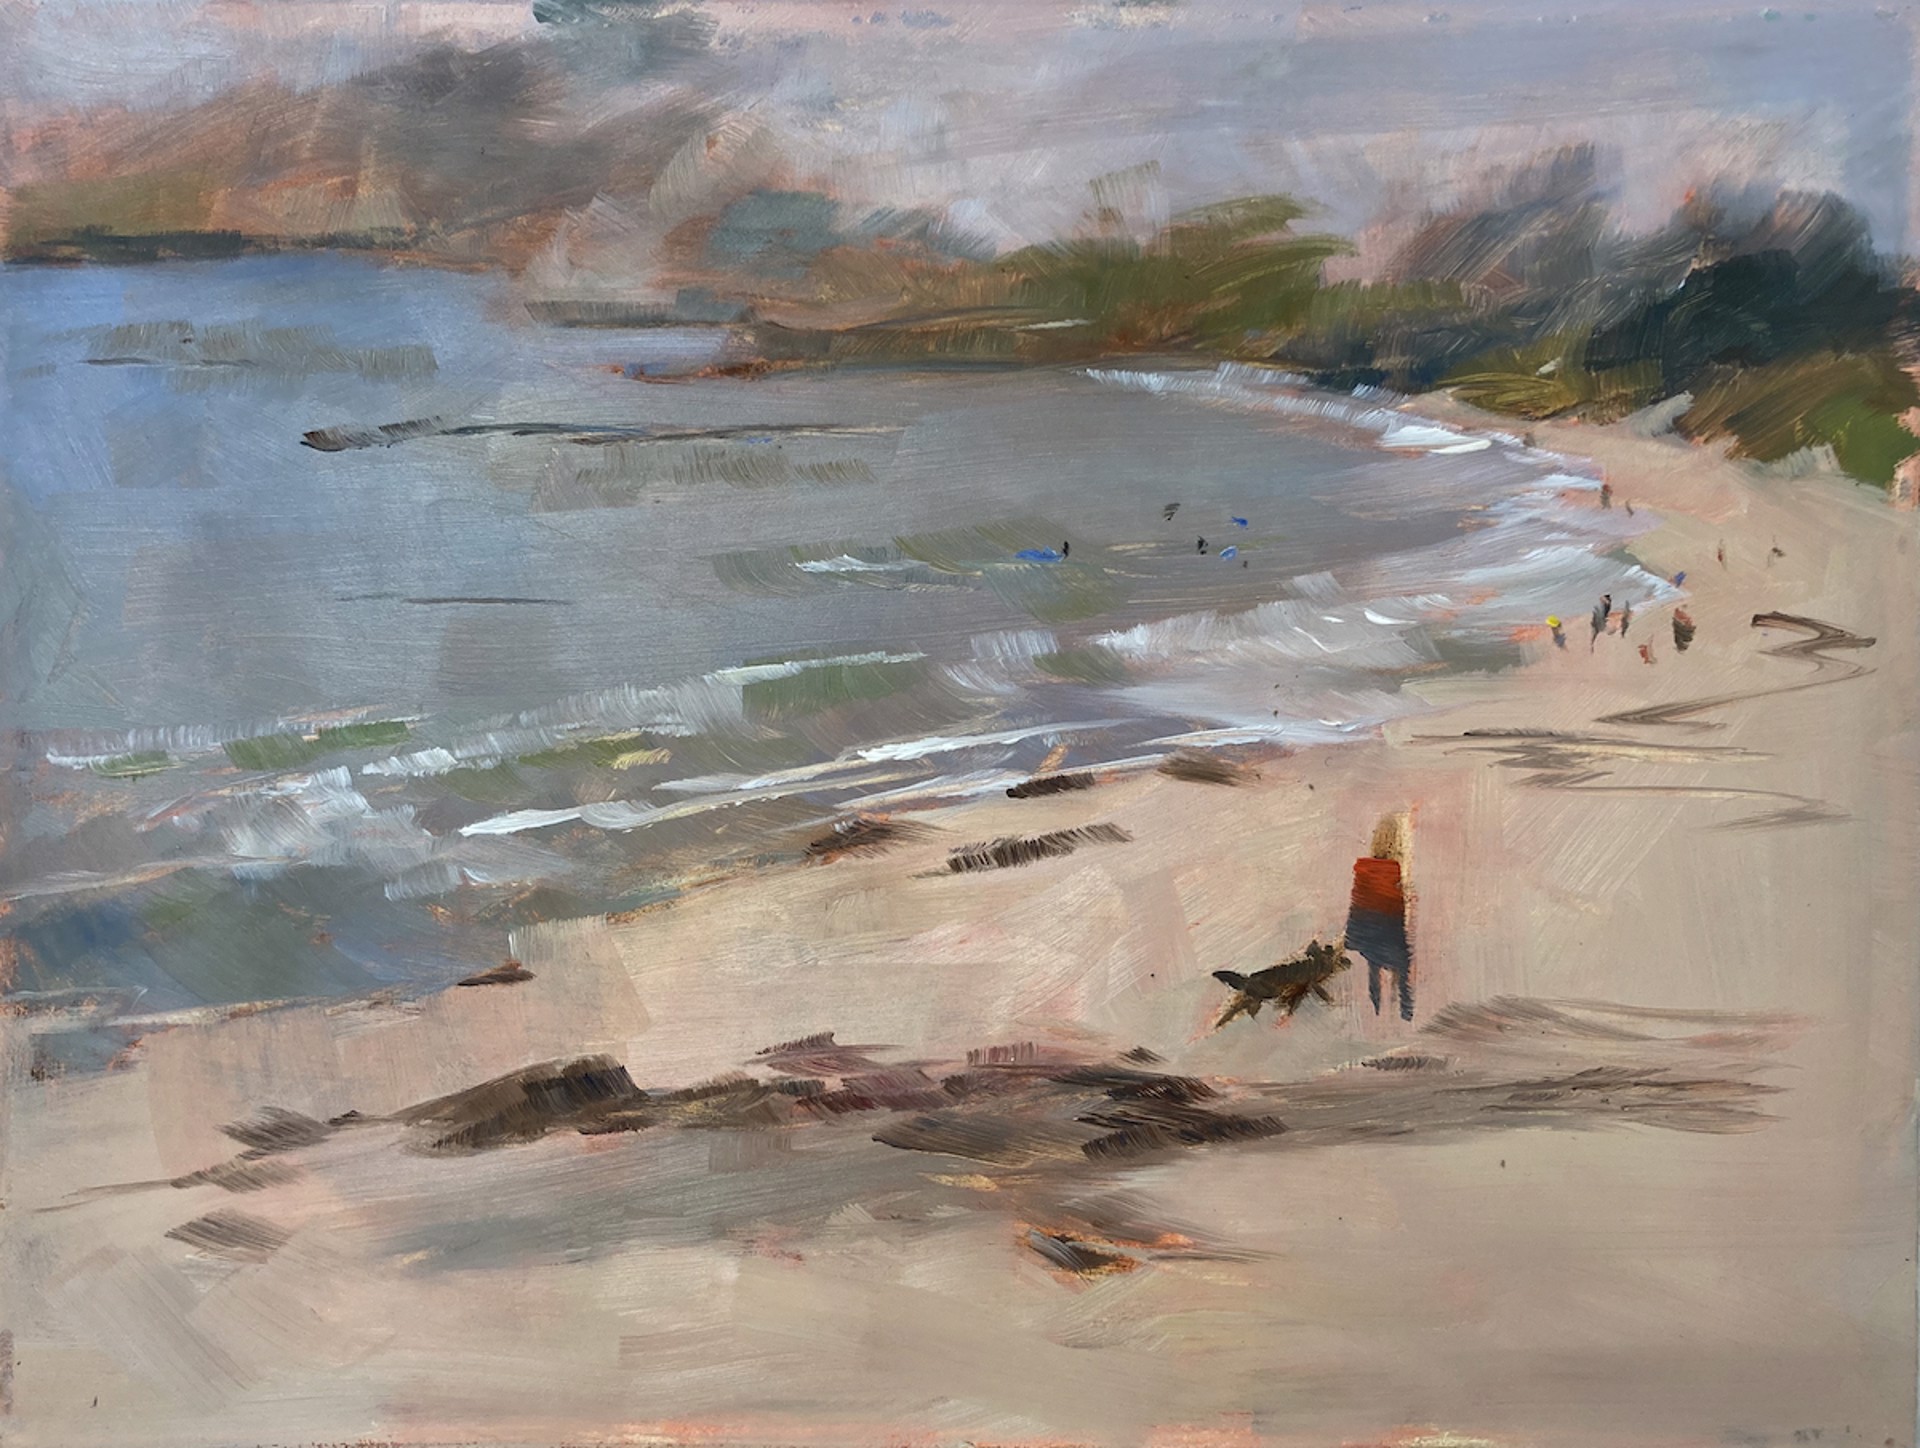 Beach Walk, Carmel on A Moody Day by Cornelia Emery